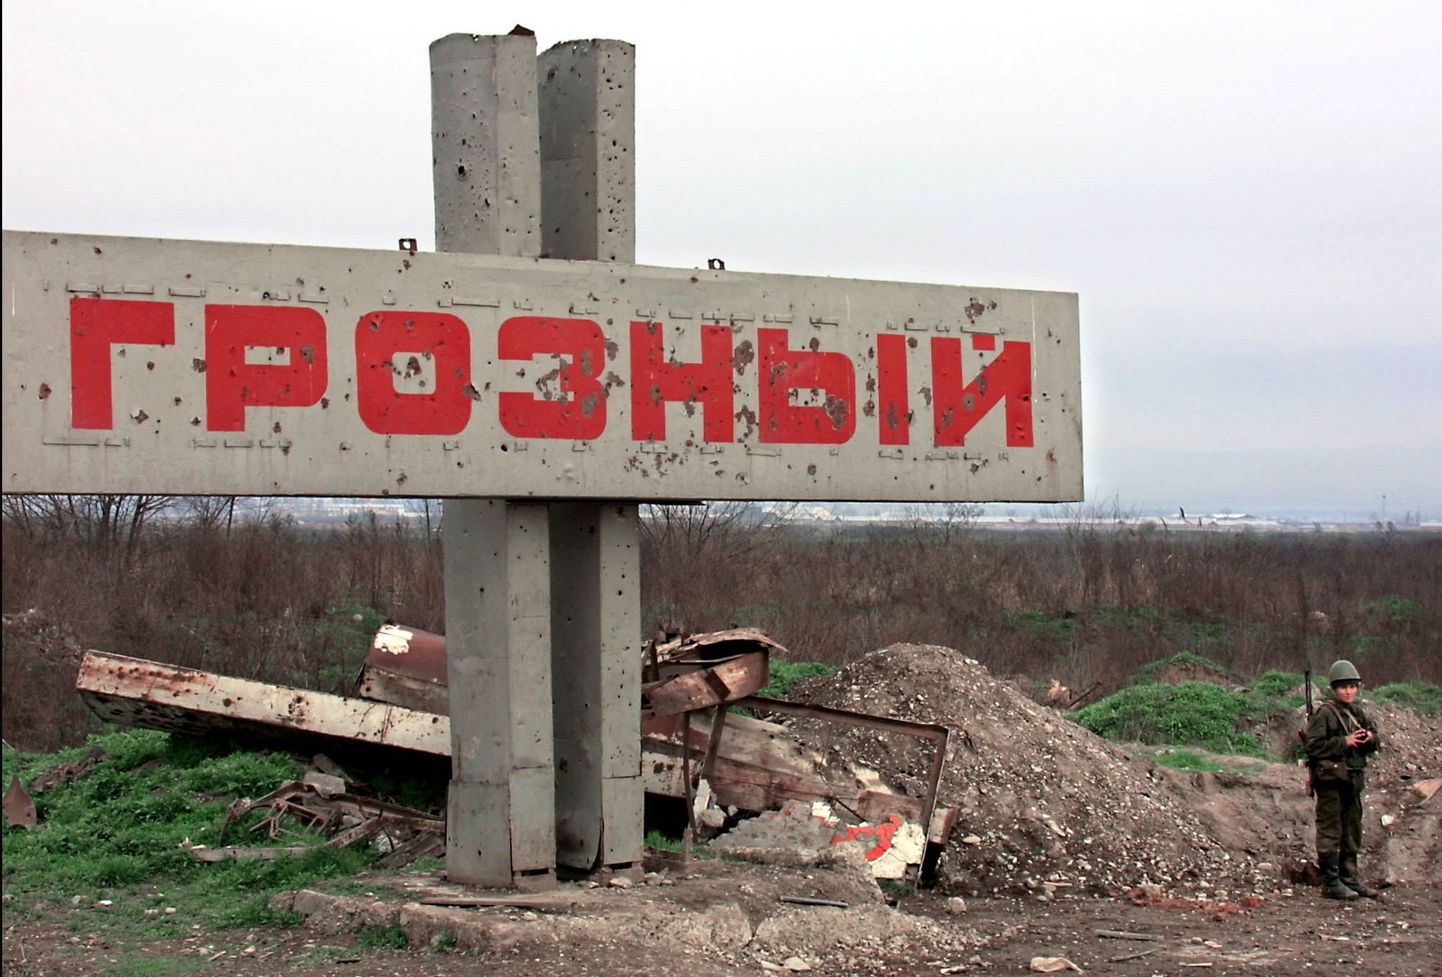 Vene sõdur aasta 2000 kevadel Groznõi sildi ees. Linn on lõpuks vallutatud.